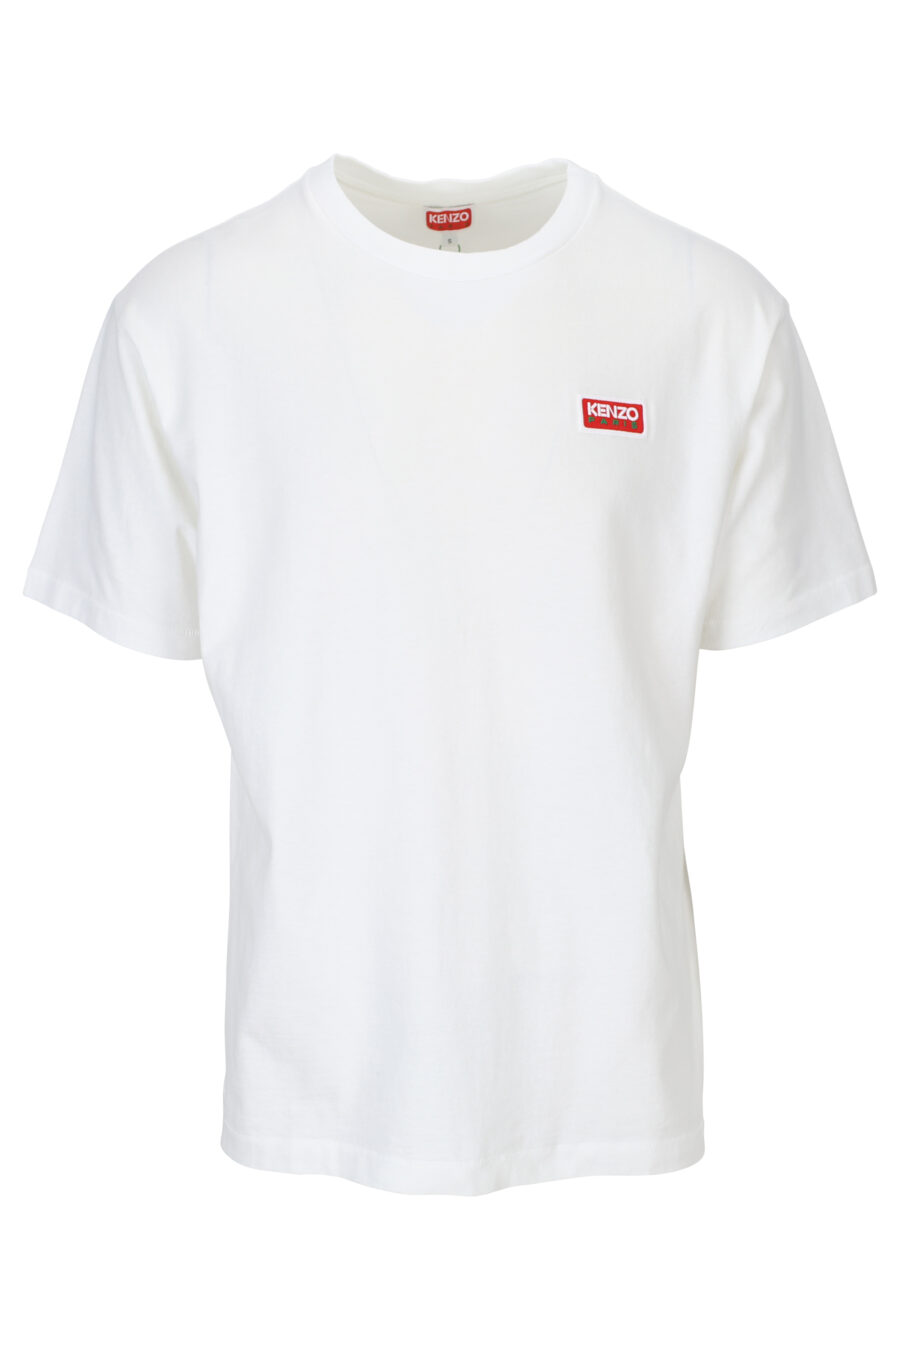 T-shirt branca com o maxilogo "kenzo paris" nas costas - 3612230543140